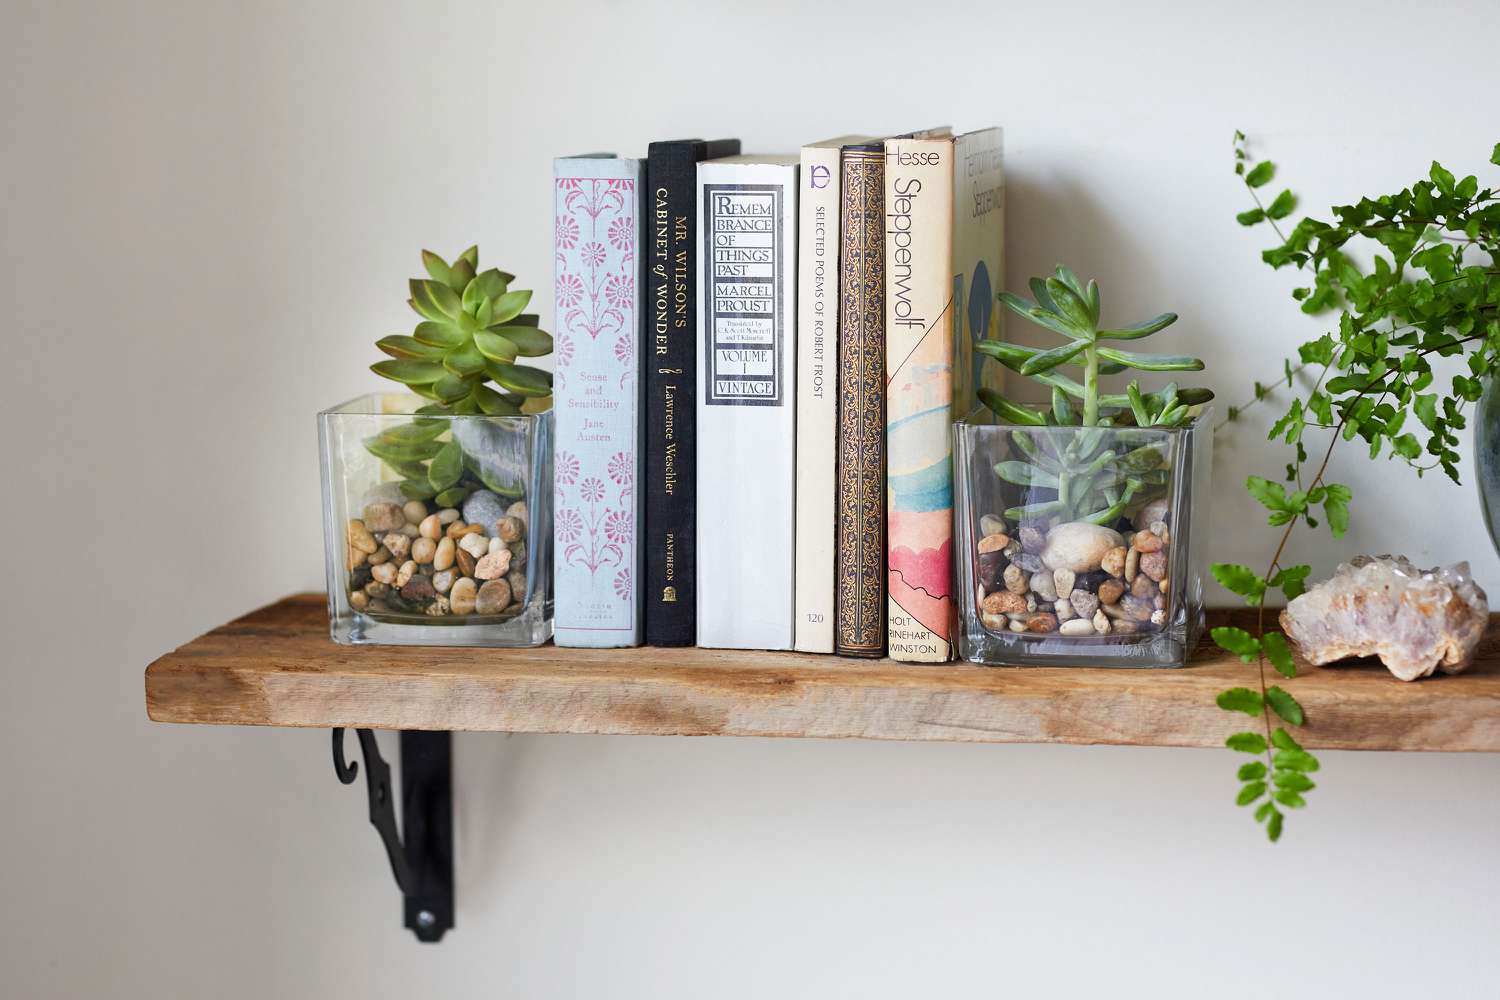 Suportes de livros DIY feitos com vasos de vidro transparente, seixos e suculentas em uma prateleira de madeira